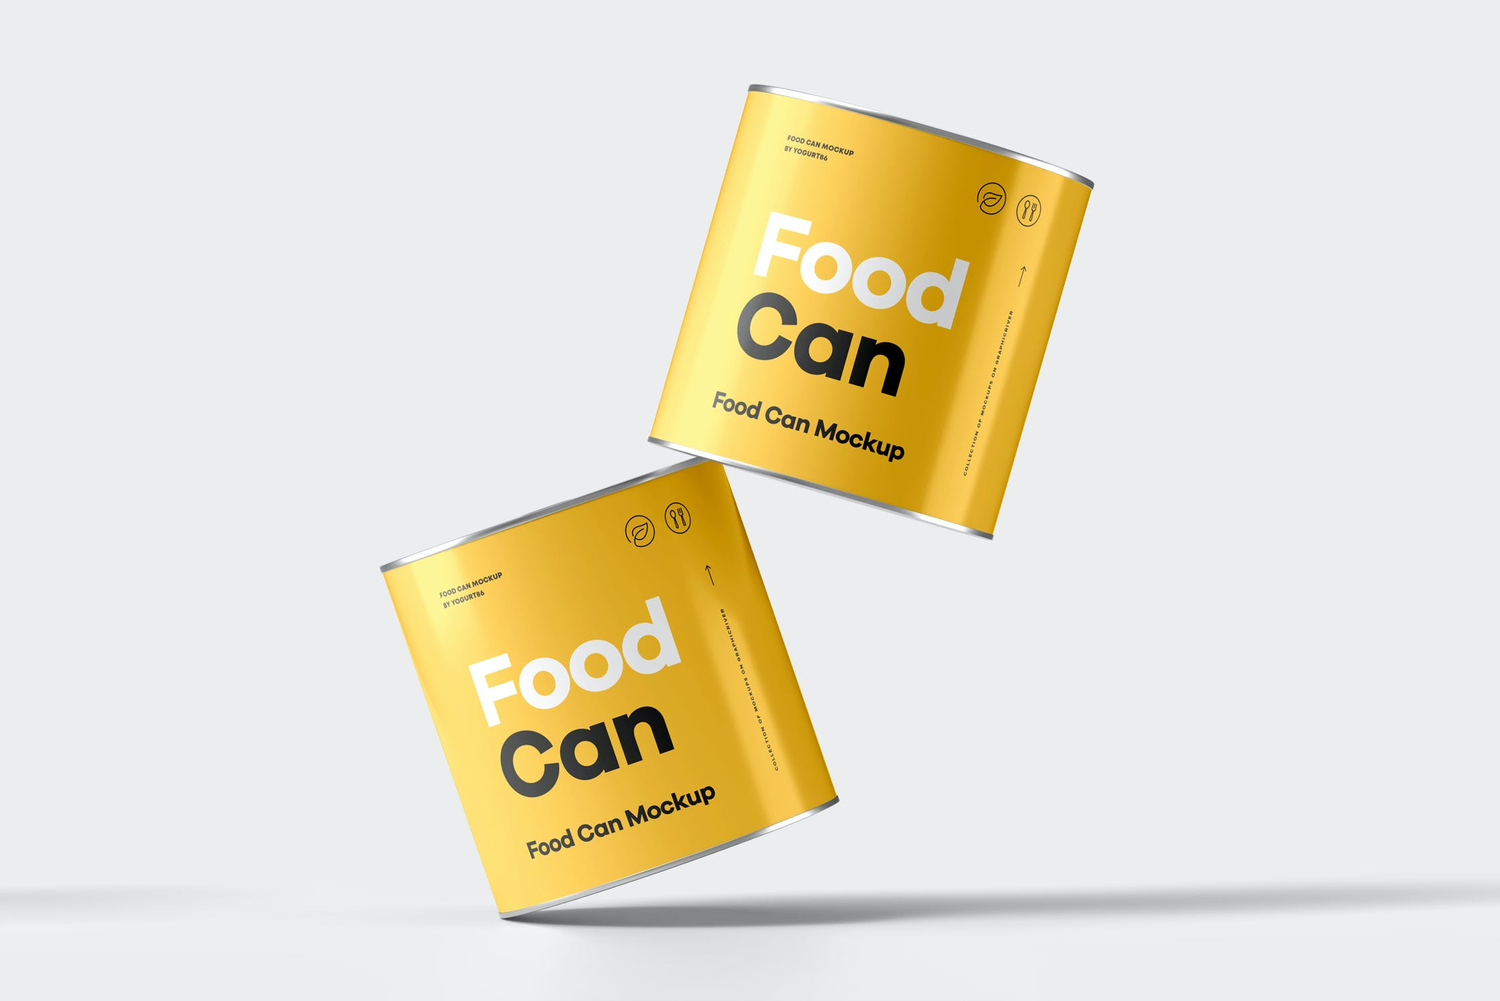 4694 6款圆形易拉罐头食品包装设计贴图ps样机素材多角度展示效果图 Food Can Mock-up@GOOODME.COM